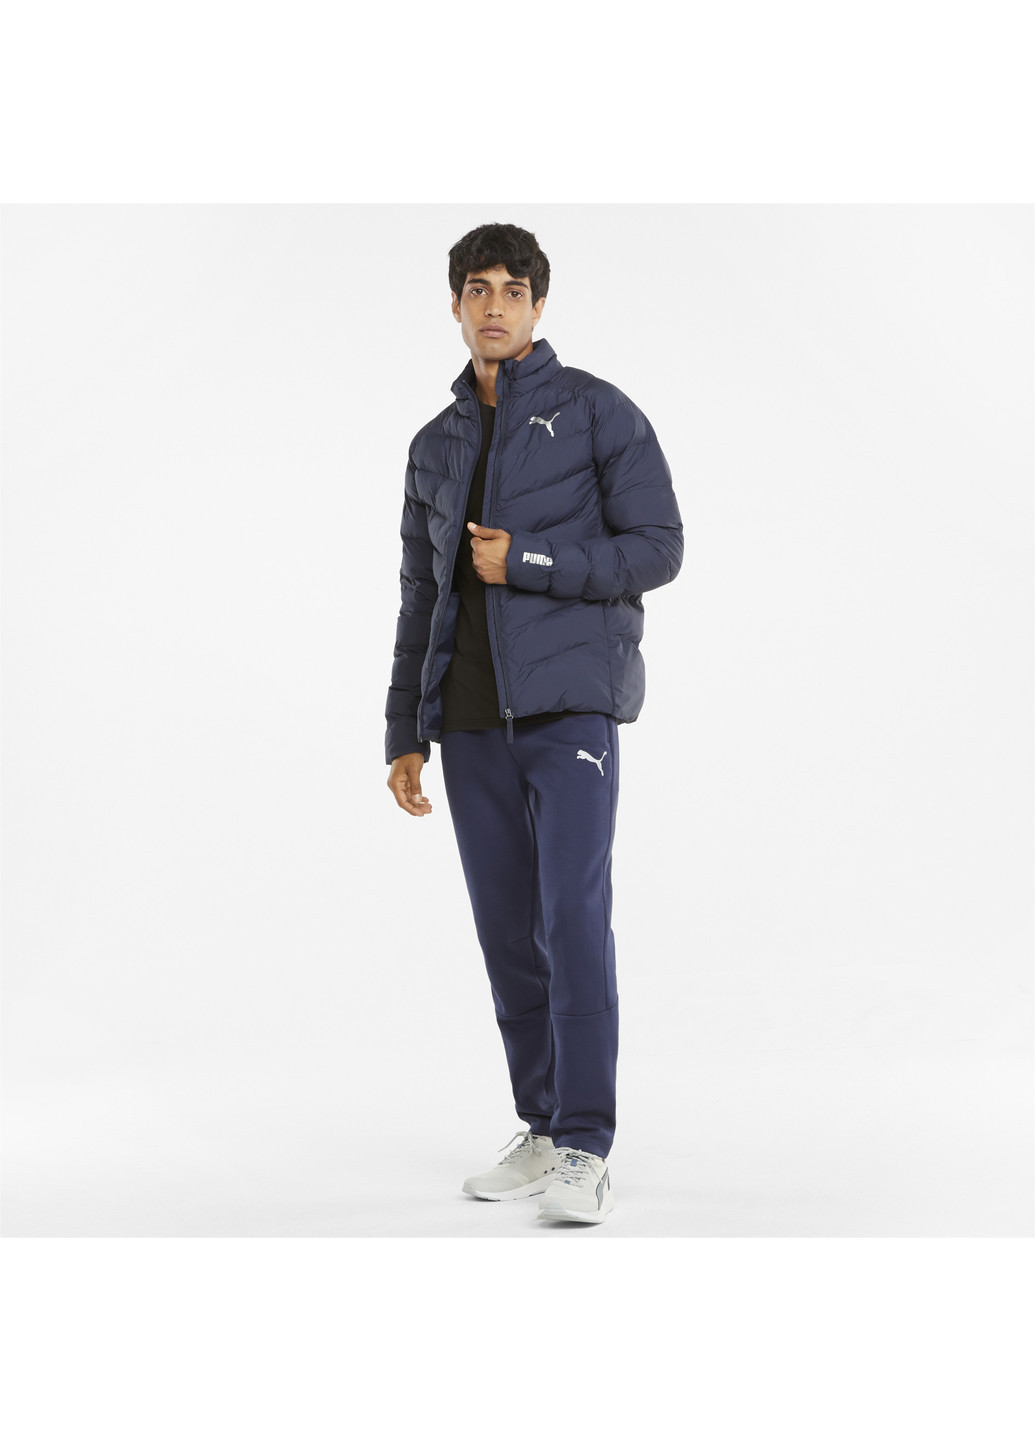 Синяя демисезонная куртка warmcell lightweight men's jacket Puma